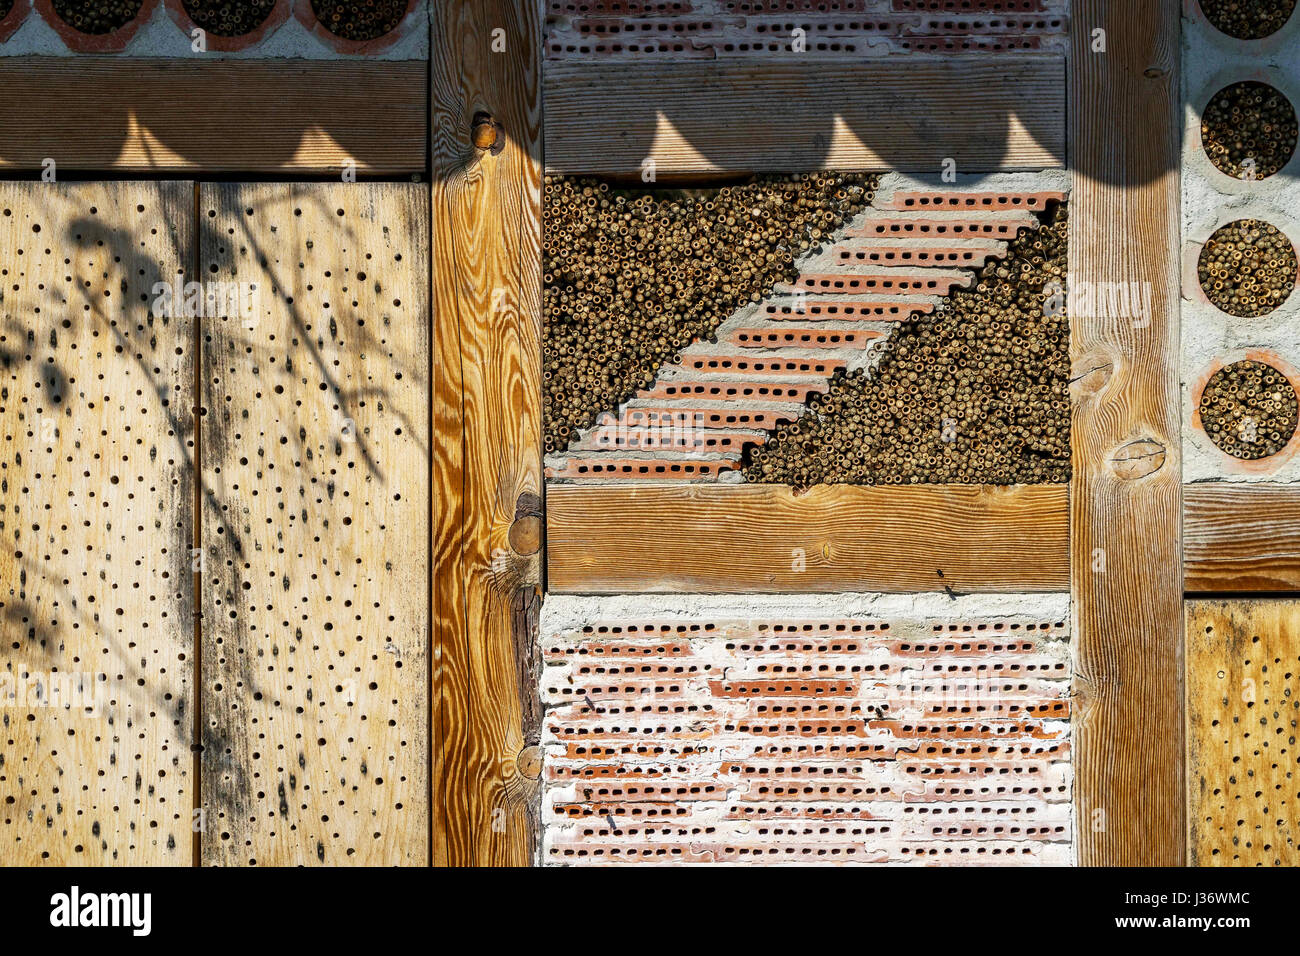 Maison de l'abeille dans la forêt dans la région de Bade-Wurtemberg, Allemagne Banque D'Images